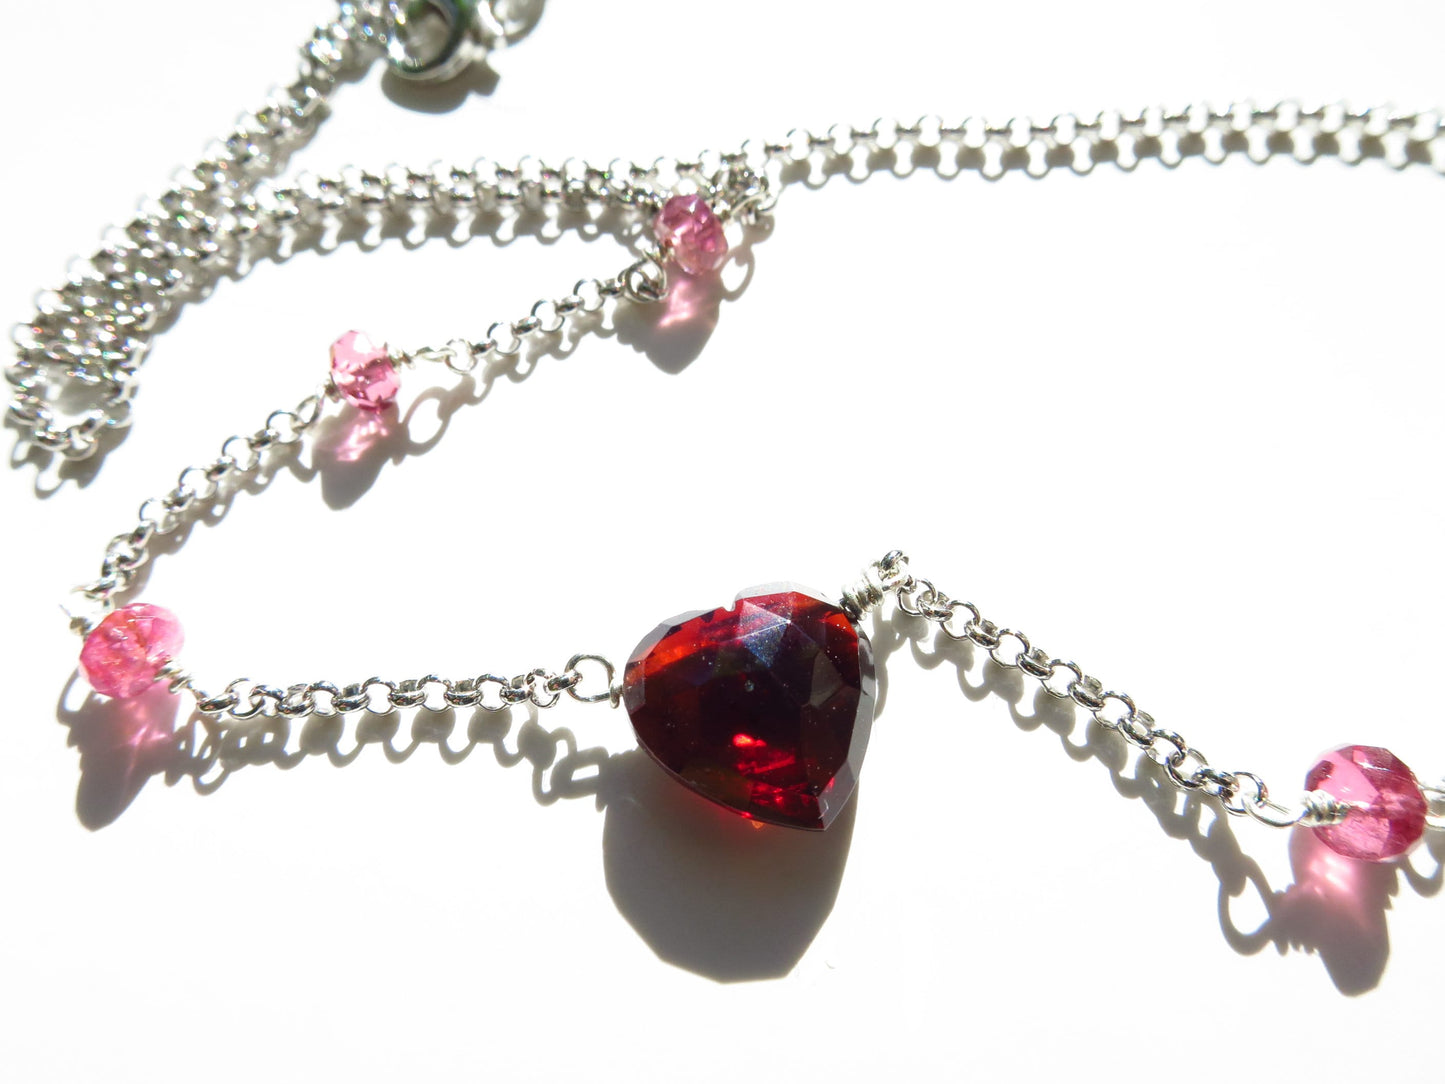 Wunderschöner Mosambik Granat in Herzform und Pink Turmalin Perlen Sterling Silber rhodiniert Kette Natur Edlesteine unbehandelt